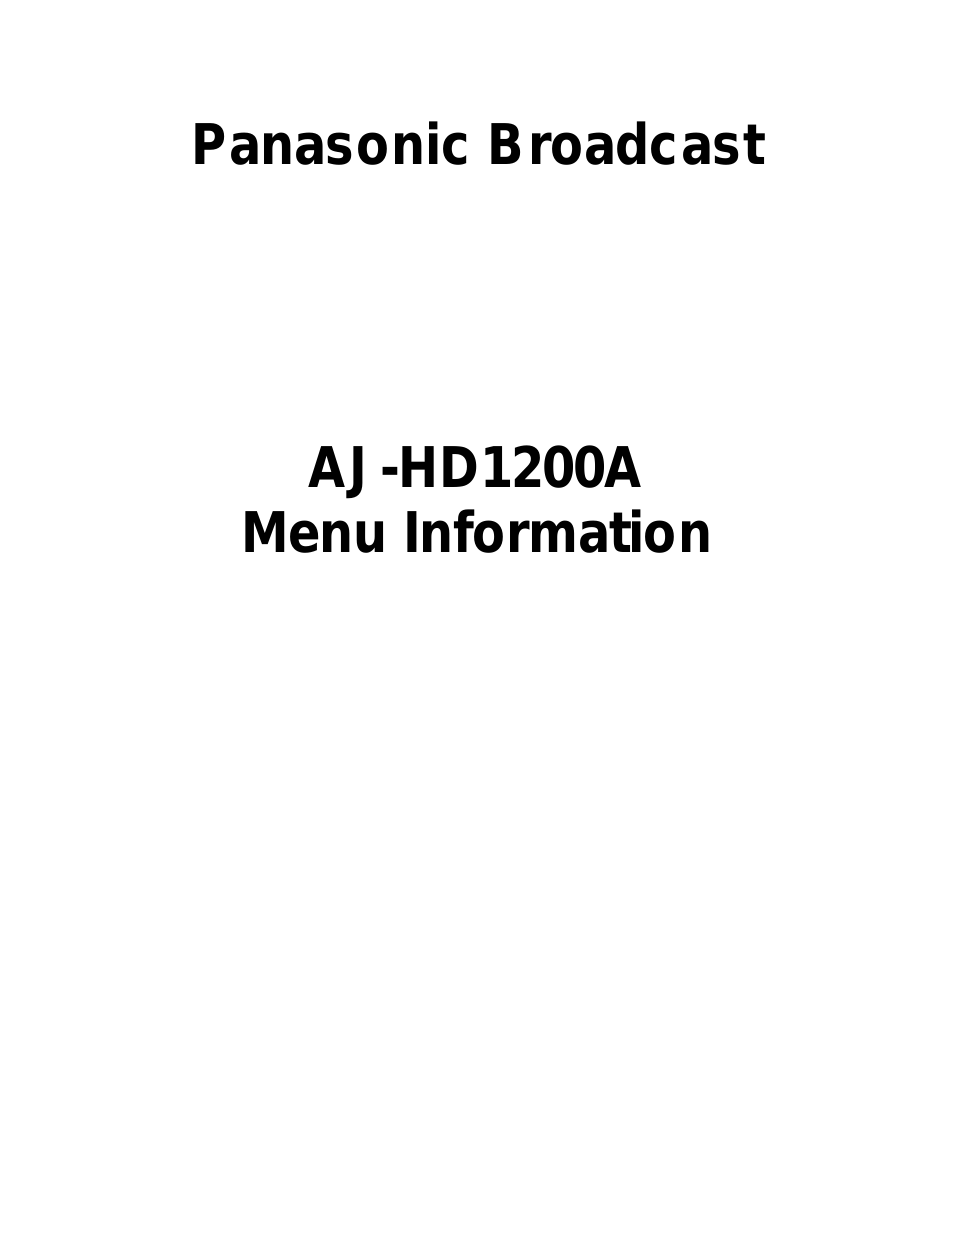 AJ-HD1200A